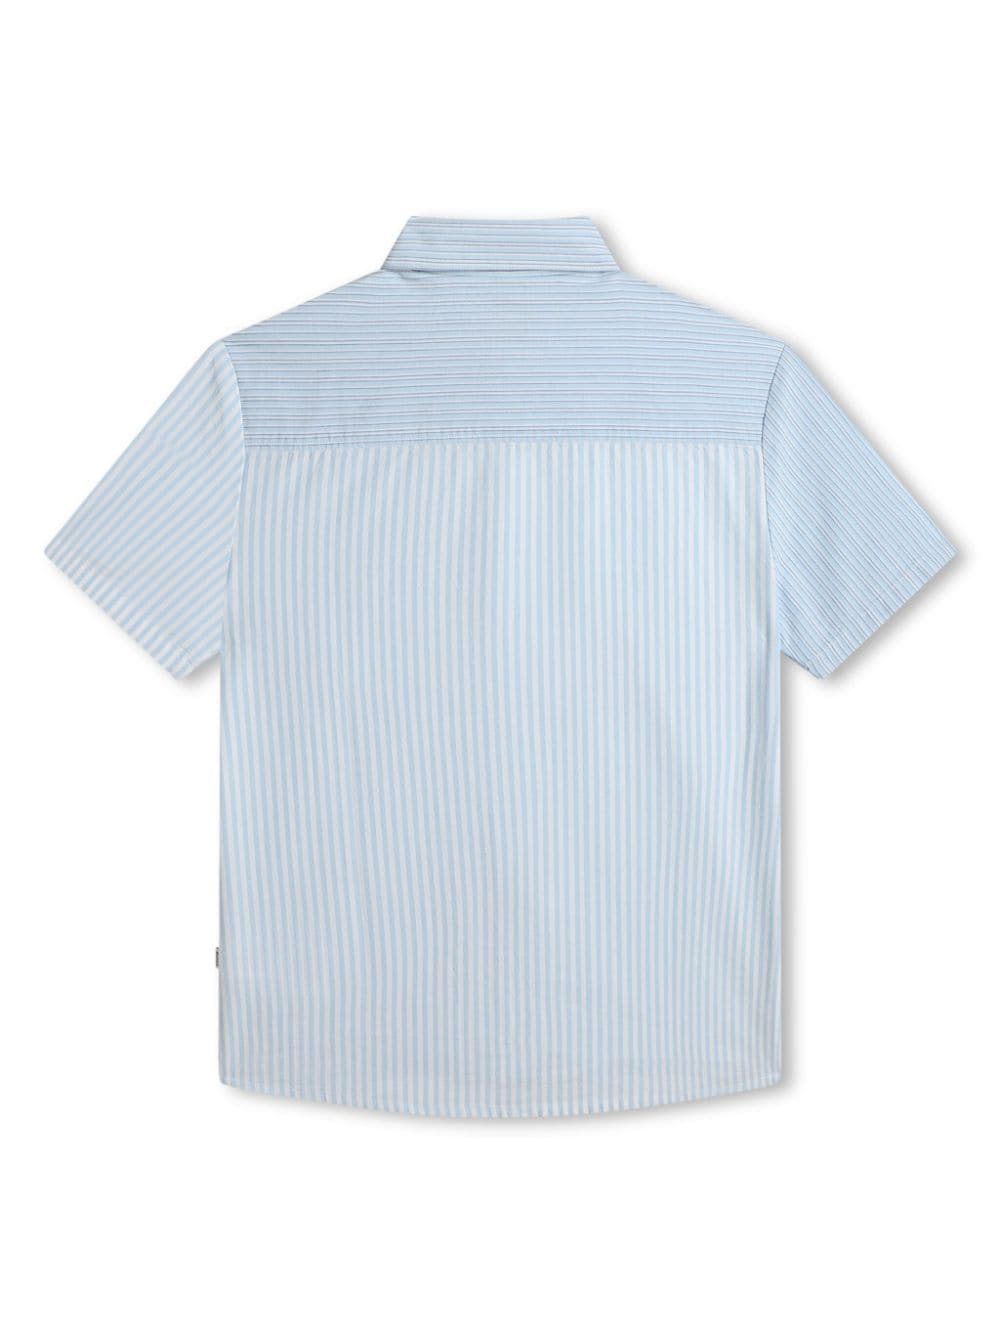 Camicia bianca e blu per bambino